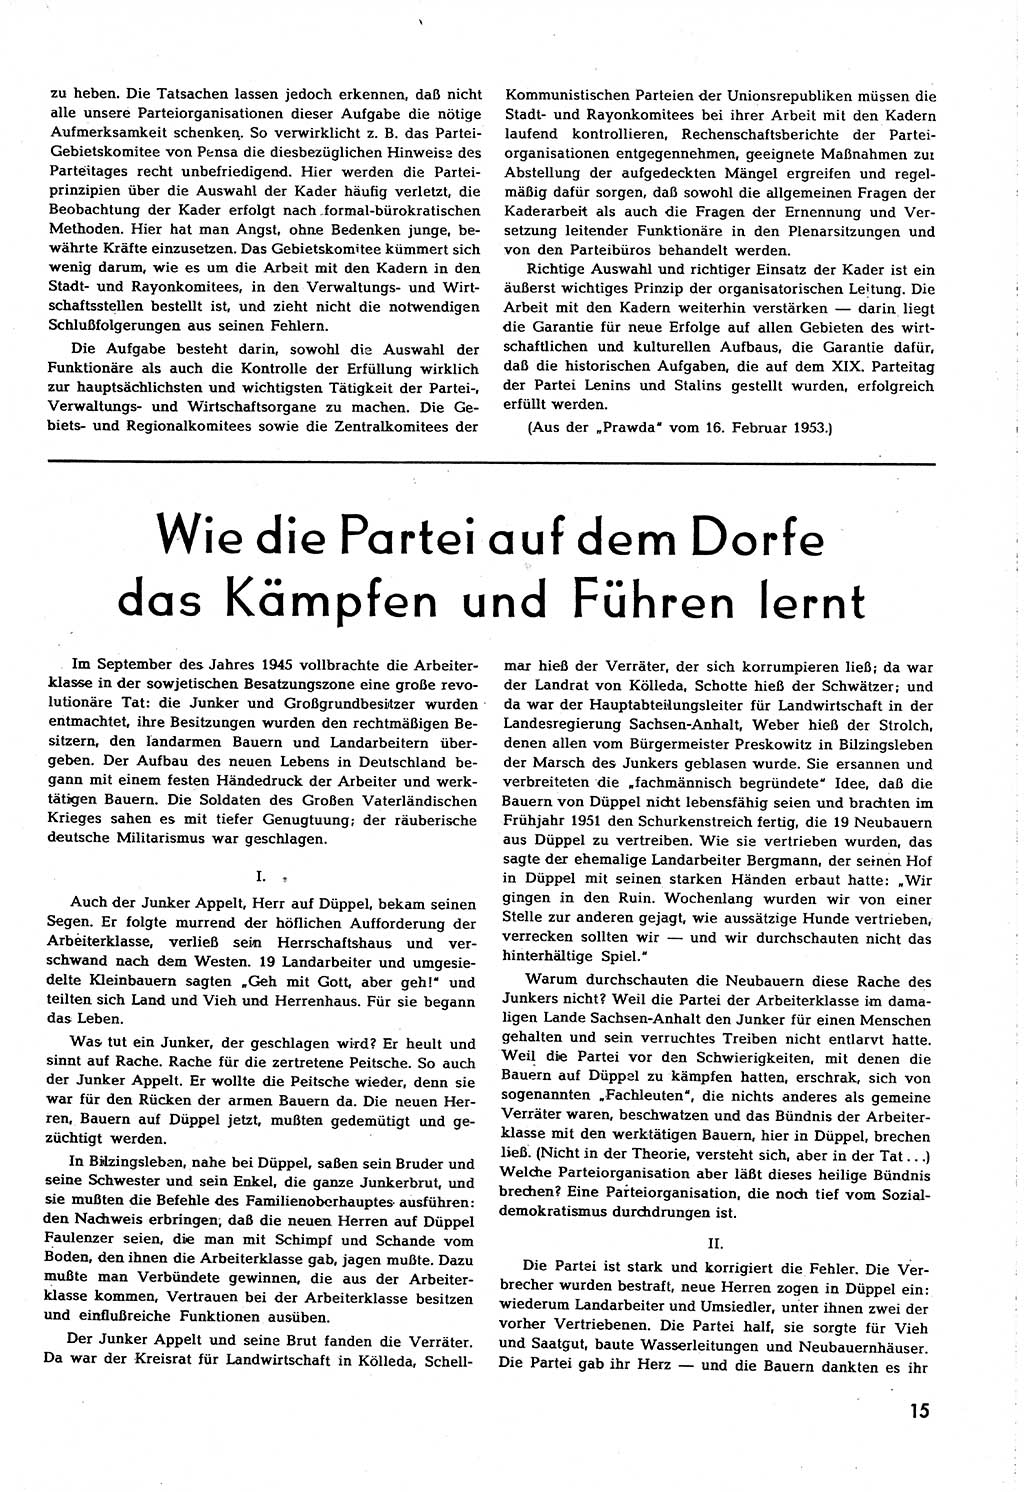 Neuer Weg (NW), Organ des Zentralkomitees (ZK) [Sozialistische Einheitspartei Deutschlands (SED)] für alle Parteiarbeiter, 8. Jahrgang [Deutsche Demokratische Republik (DDR)] 1953, Heft 8/15 (NW ZK SED DDR 1953, H. 8/15)